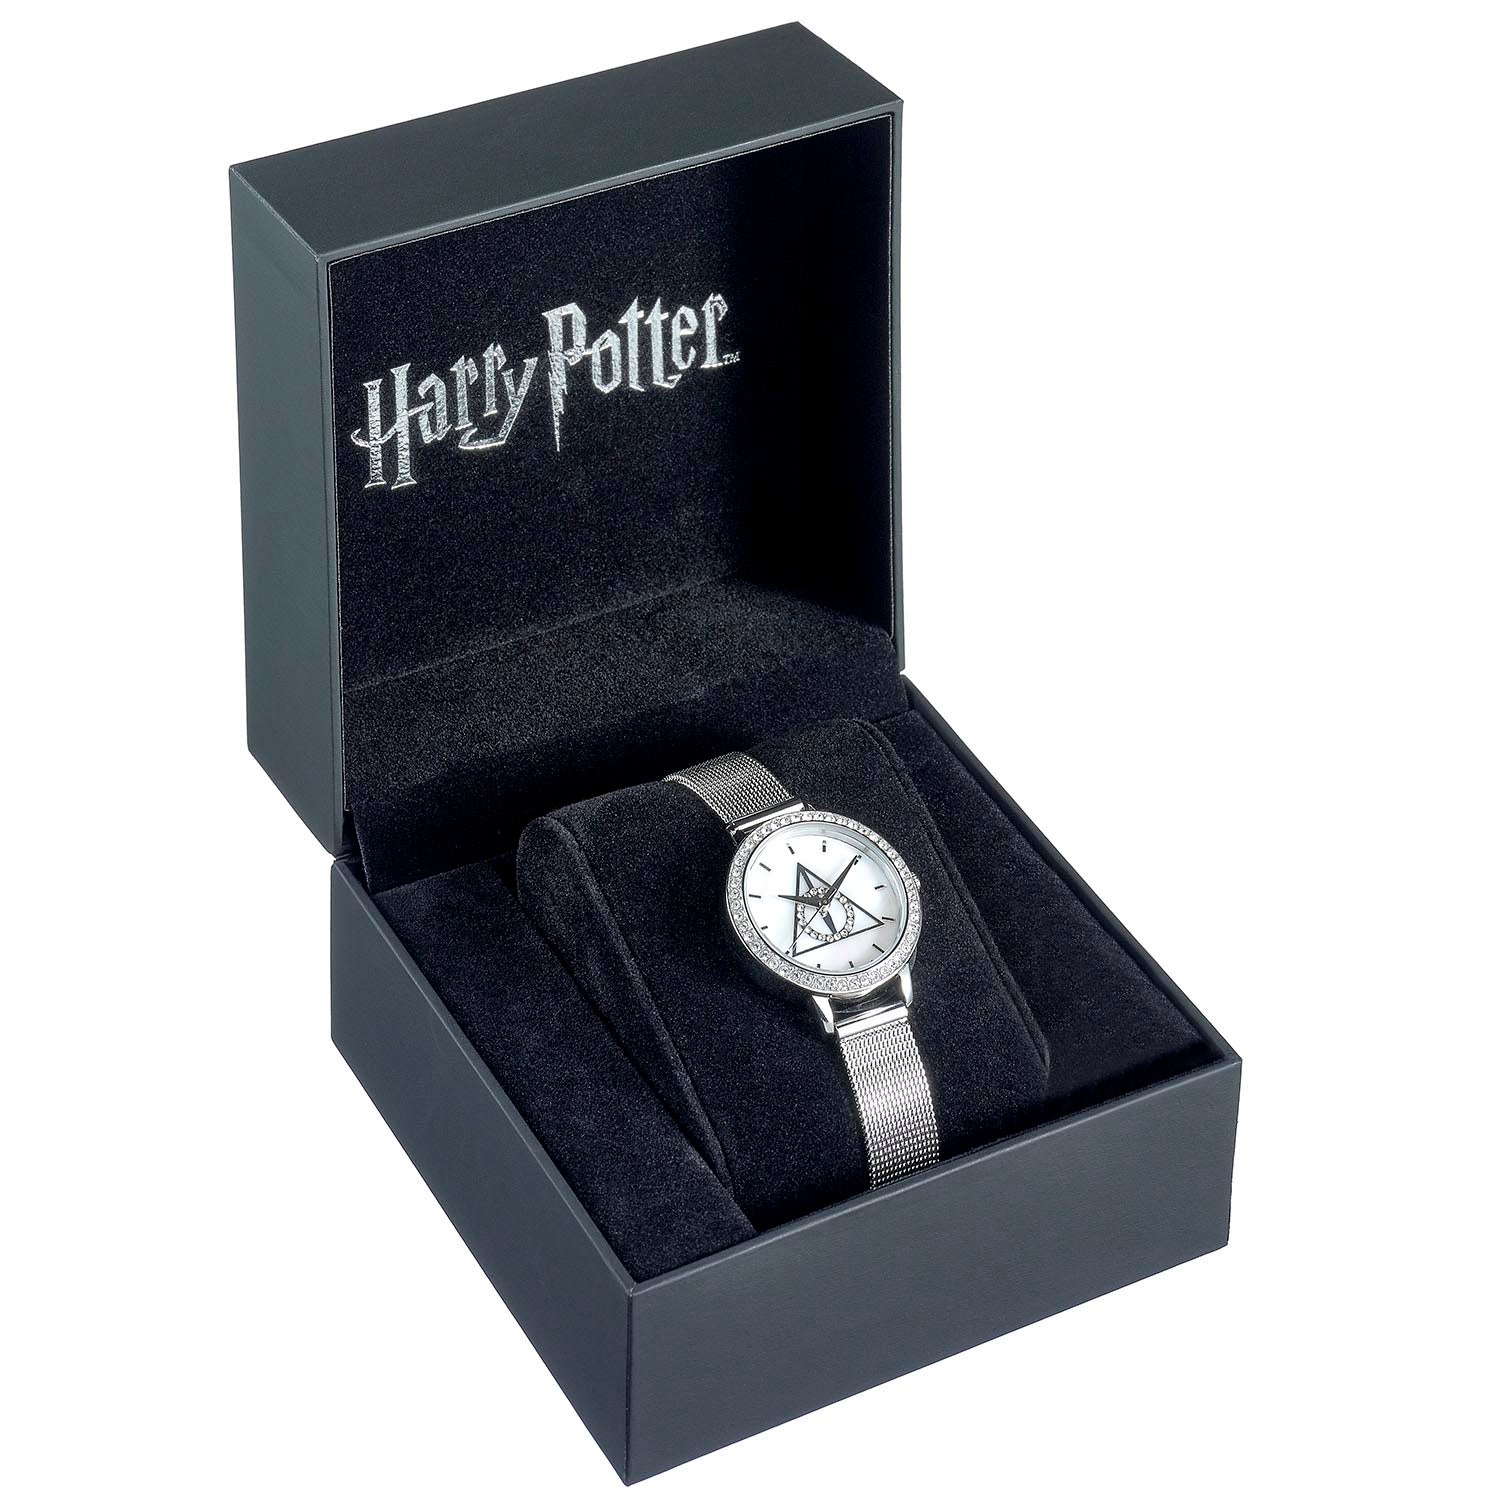 Harry Potter: Heiligtümer des Todes, silberne Uhr, verziert mit Swarovski-Kristallen – offizielles Lizenzprodukt – kostenloser Versand mit Sendungsverfolgung im Vereinigten Königreich!